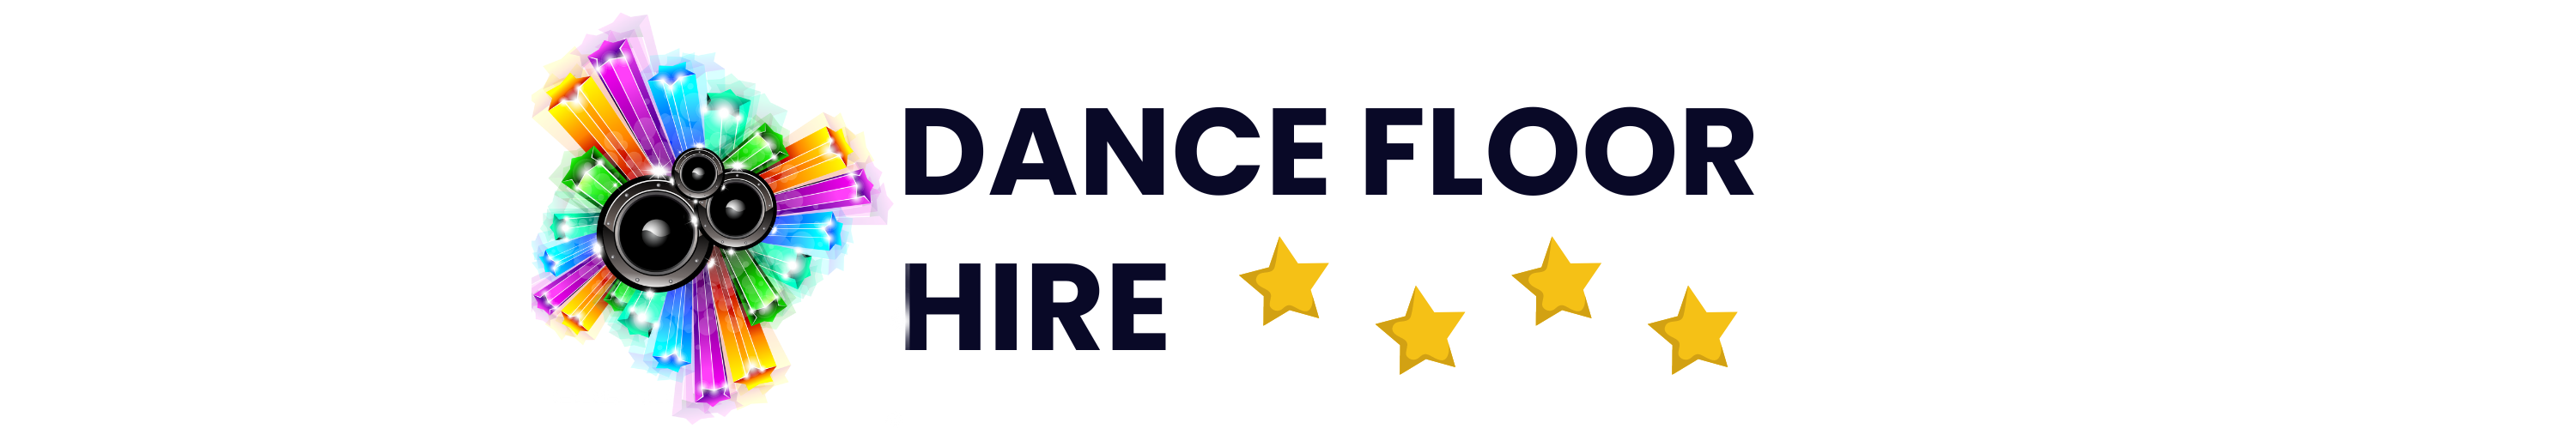 Dance Floor Logo